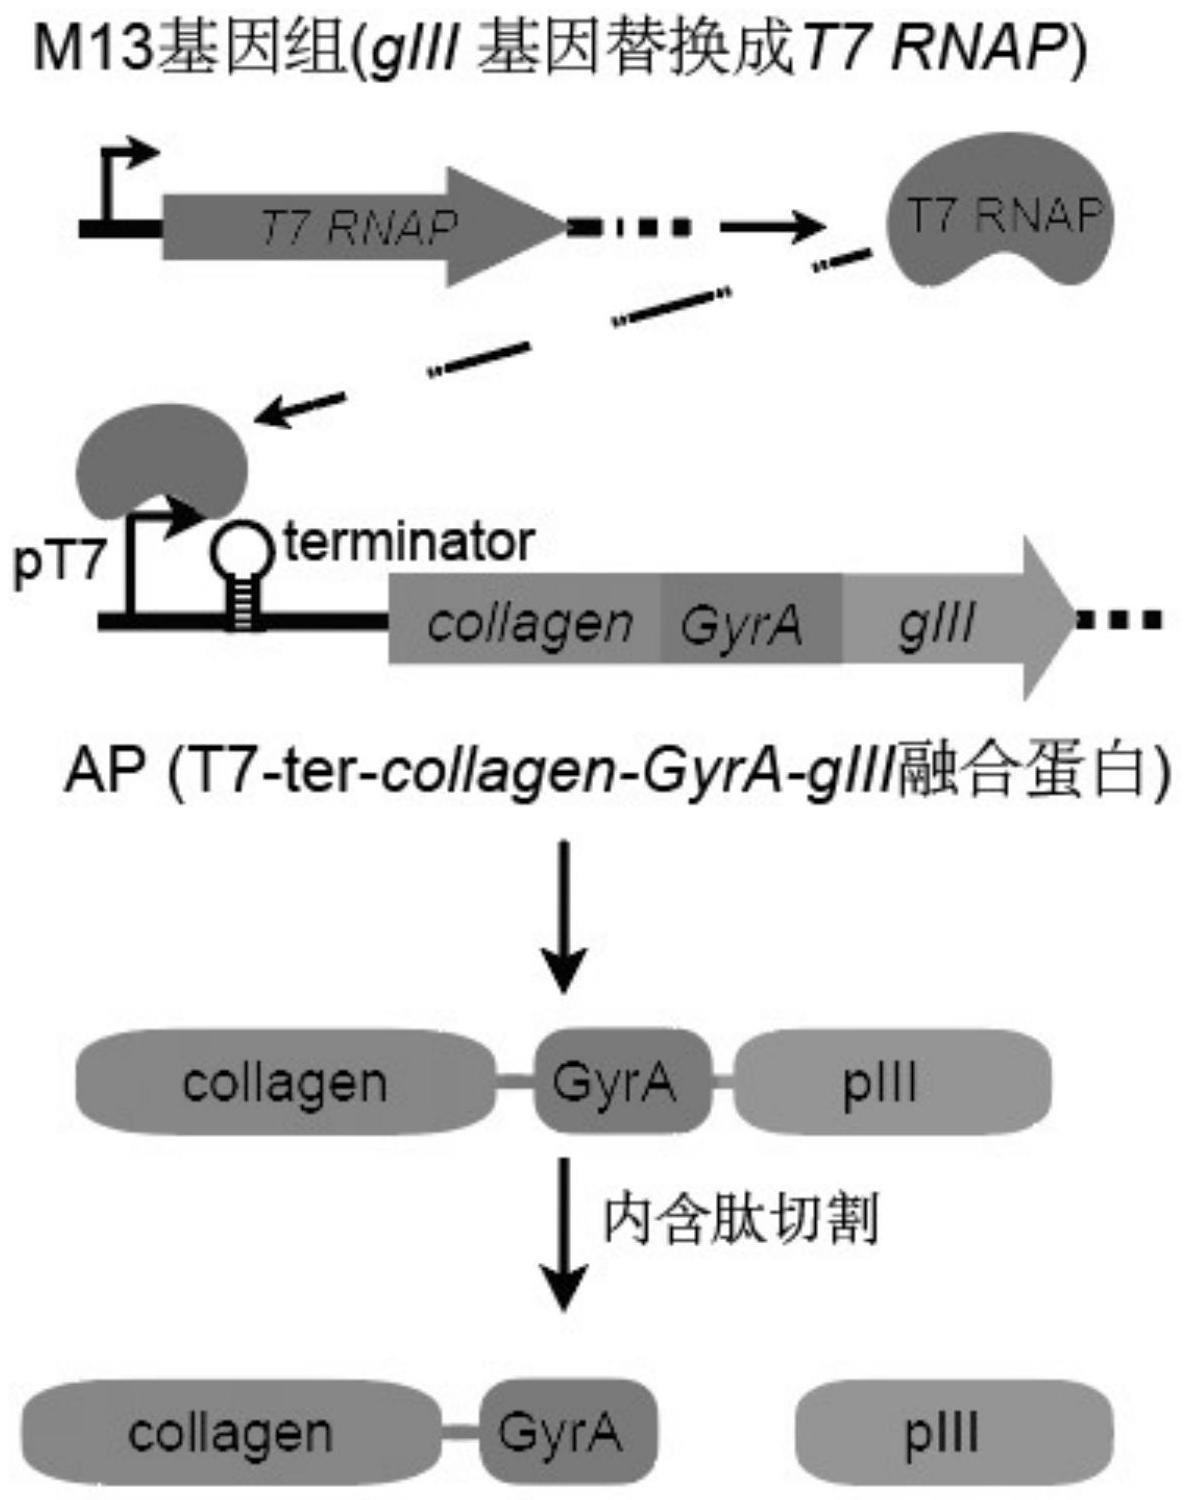 增强T7RNAP对胶原蛋白/弹力蛋白转录活性的定向进化系统和方法与流程